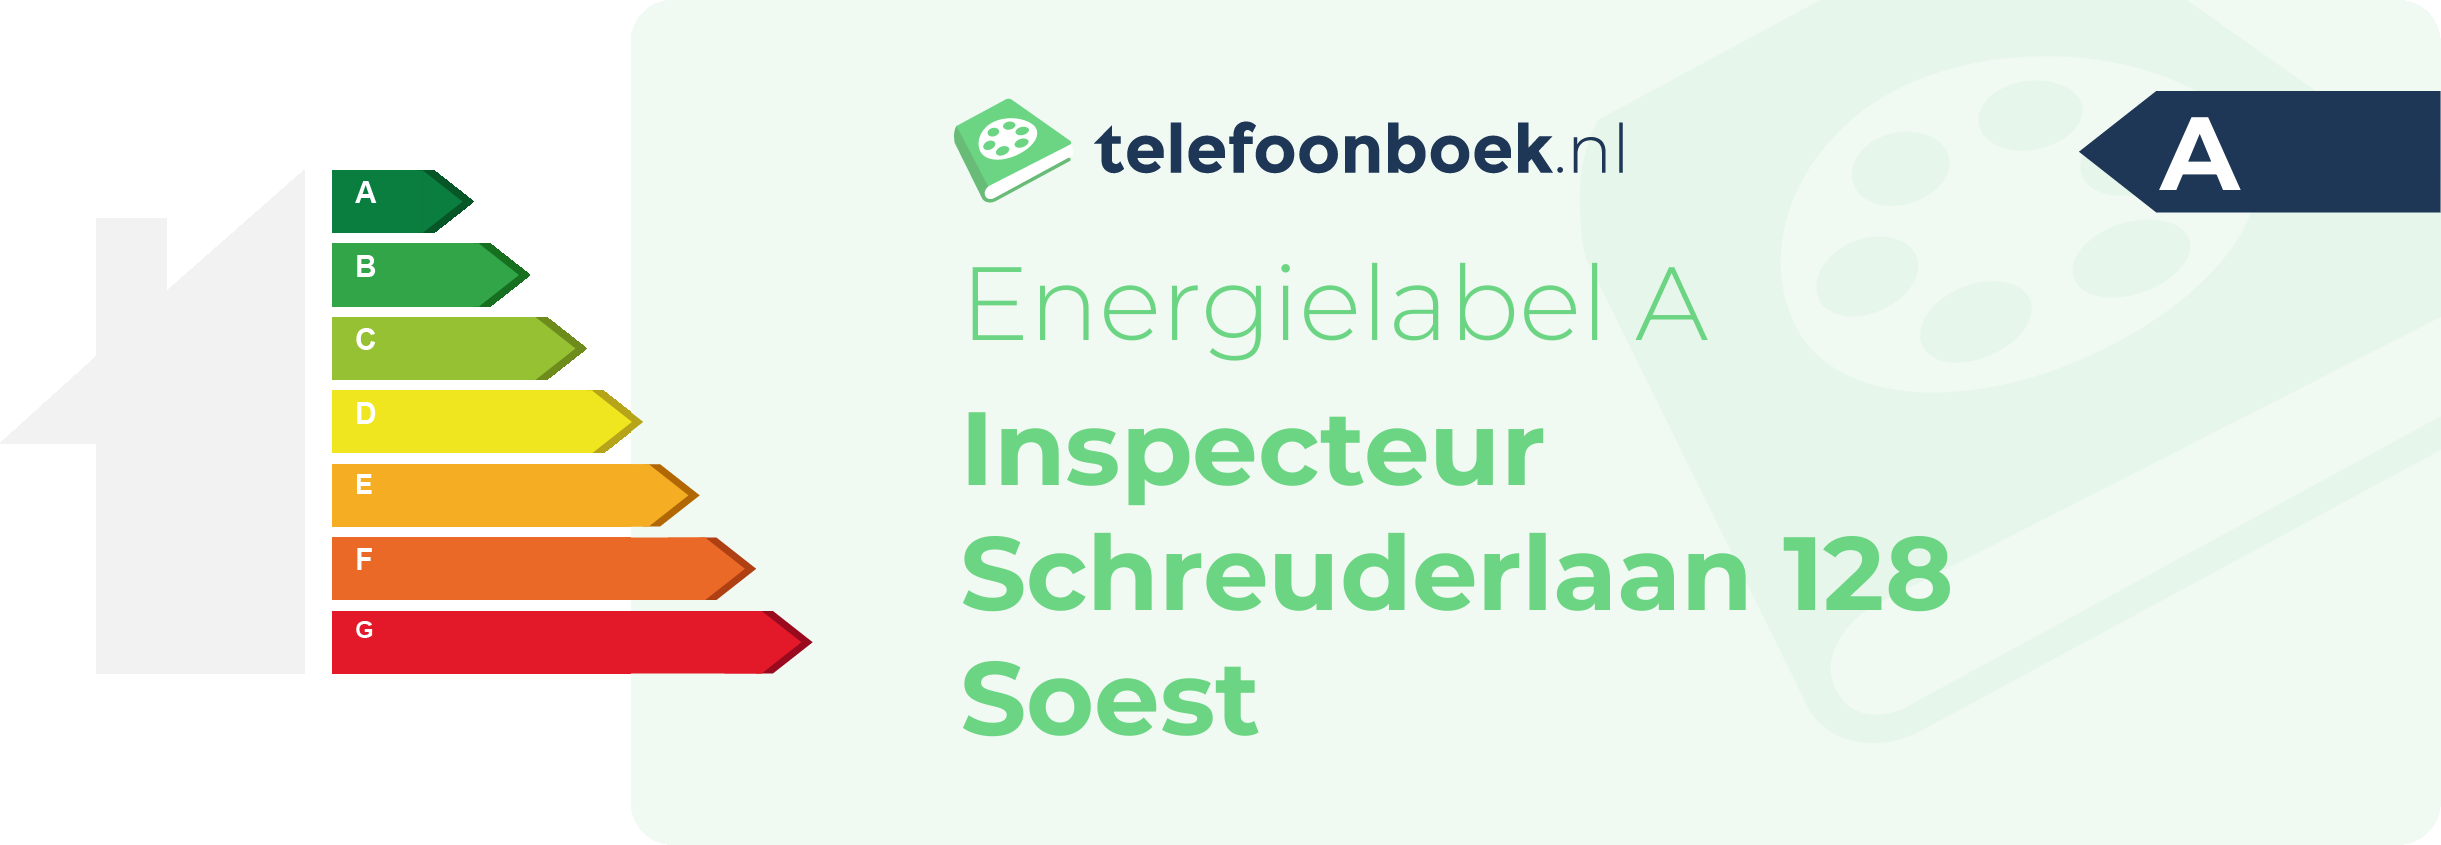 Energielabel Inspecteur Schreuderlaan 128 Soest